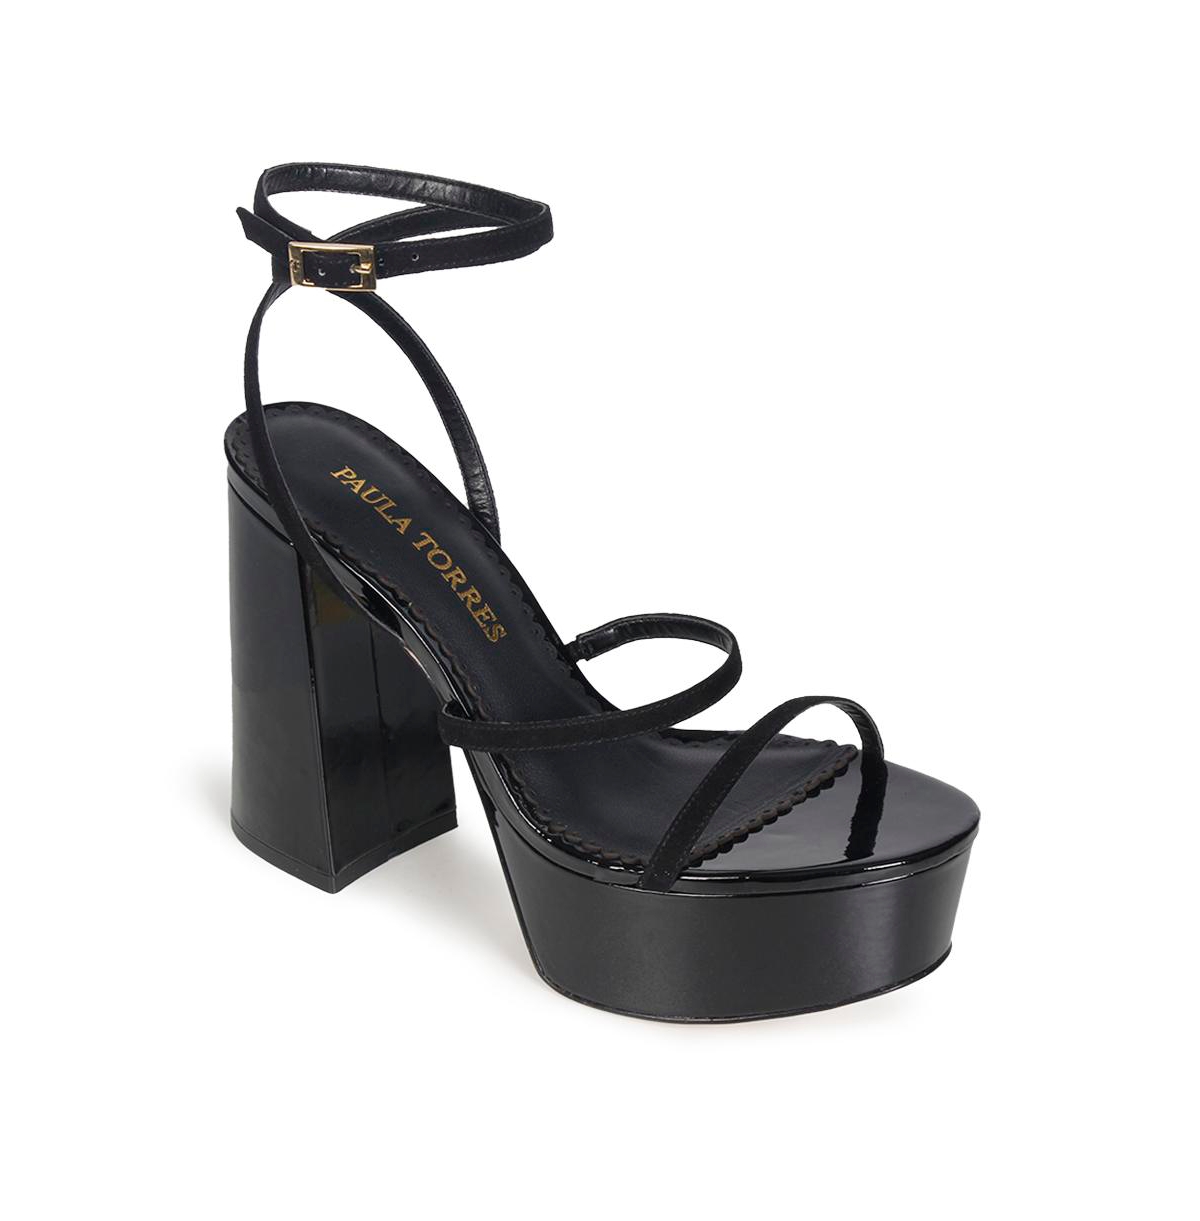 Shoes Women's Emily Platform Dress Sandals - Black